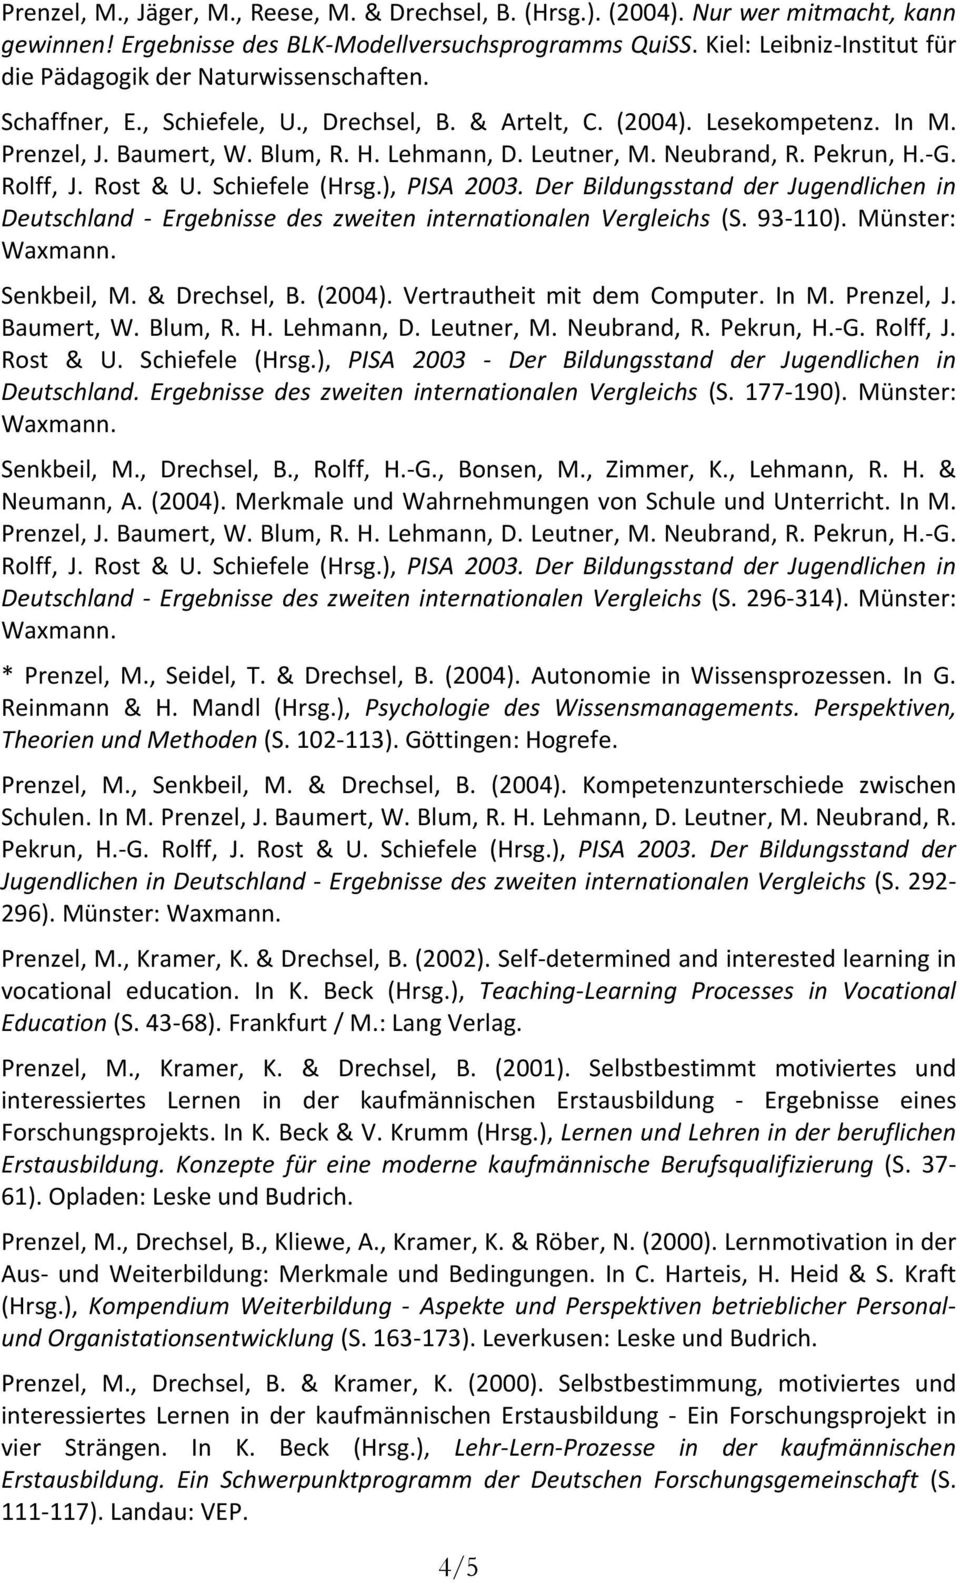 Leutner, M. Neubrand, R. Pekrun, H.-G. Rolff, J. Rost & U. Schiefele (Hrsg.), PISA 2003. Der Bildungsstand der Jugendlichen in Deutschland - Ergebnisse des zweiten internationalen Vergleichs (S.